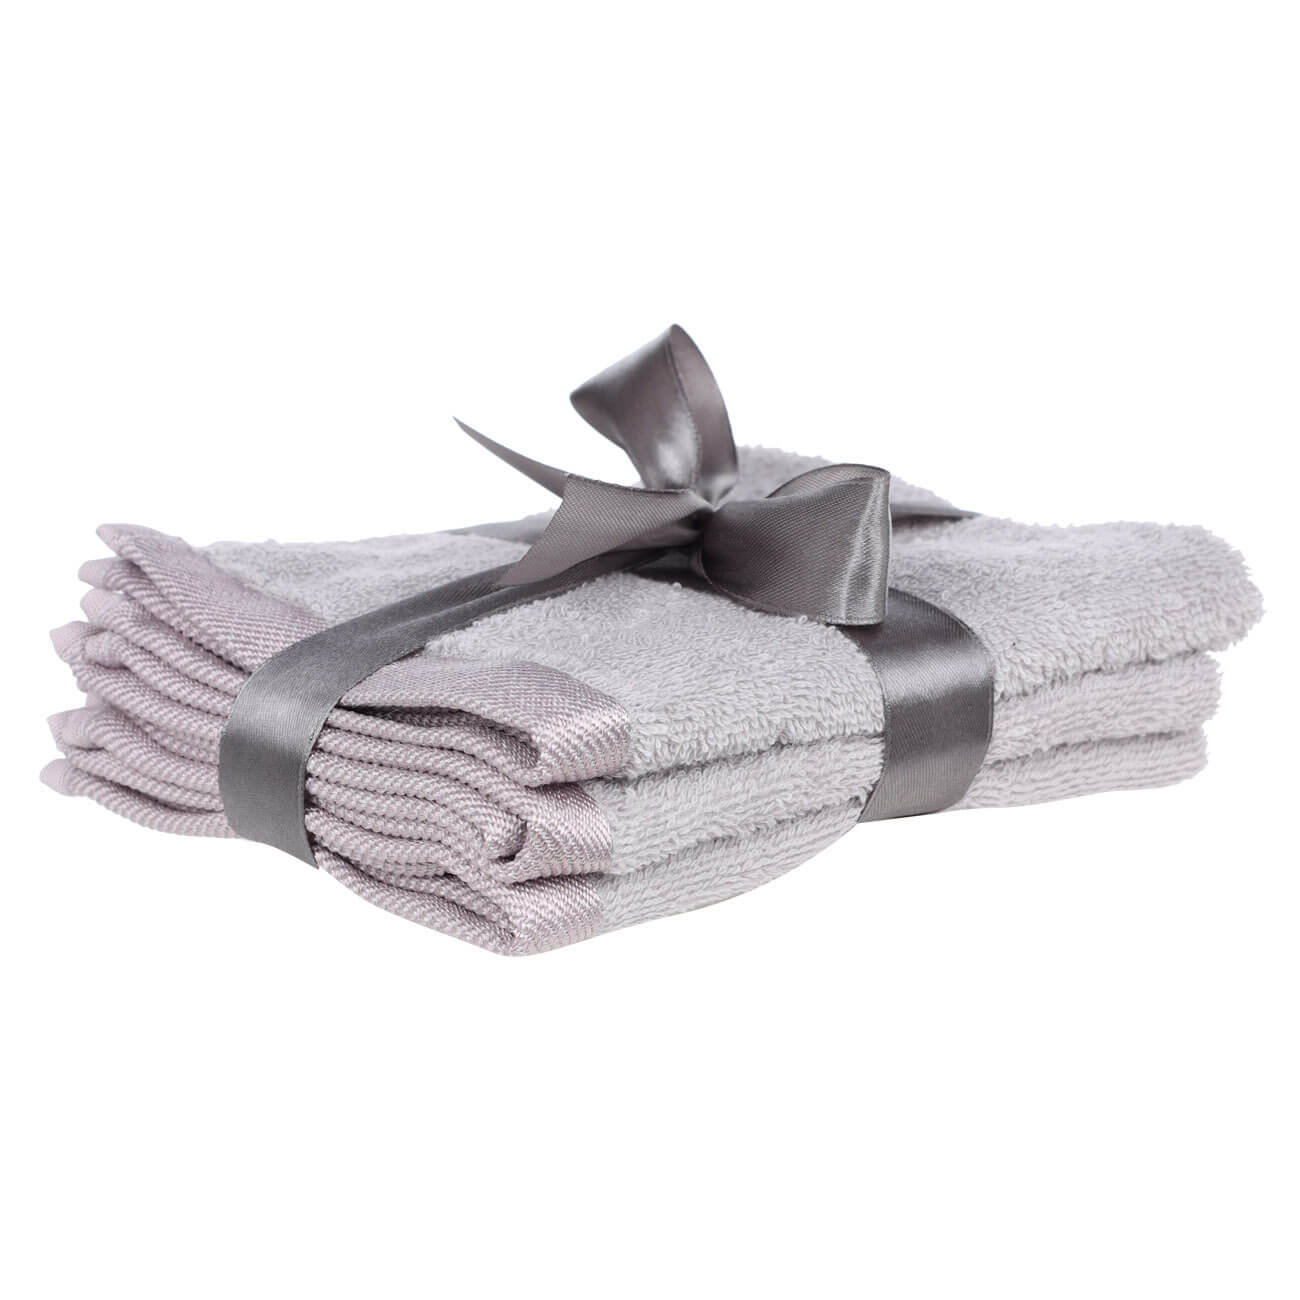 Полотенце, 30х30 см, 3 шт, хлопок, серое, Wellness полотенце 30х30 см 4 шт в корзине хлопок целлюлоза серое белое basket towel